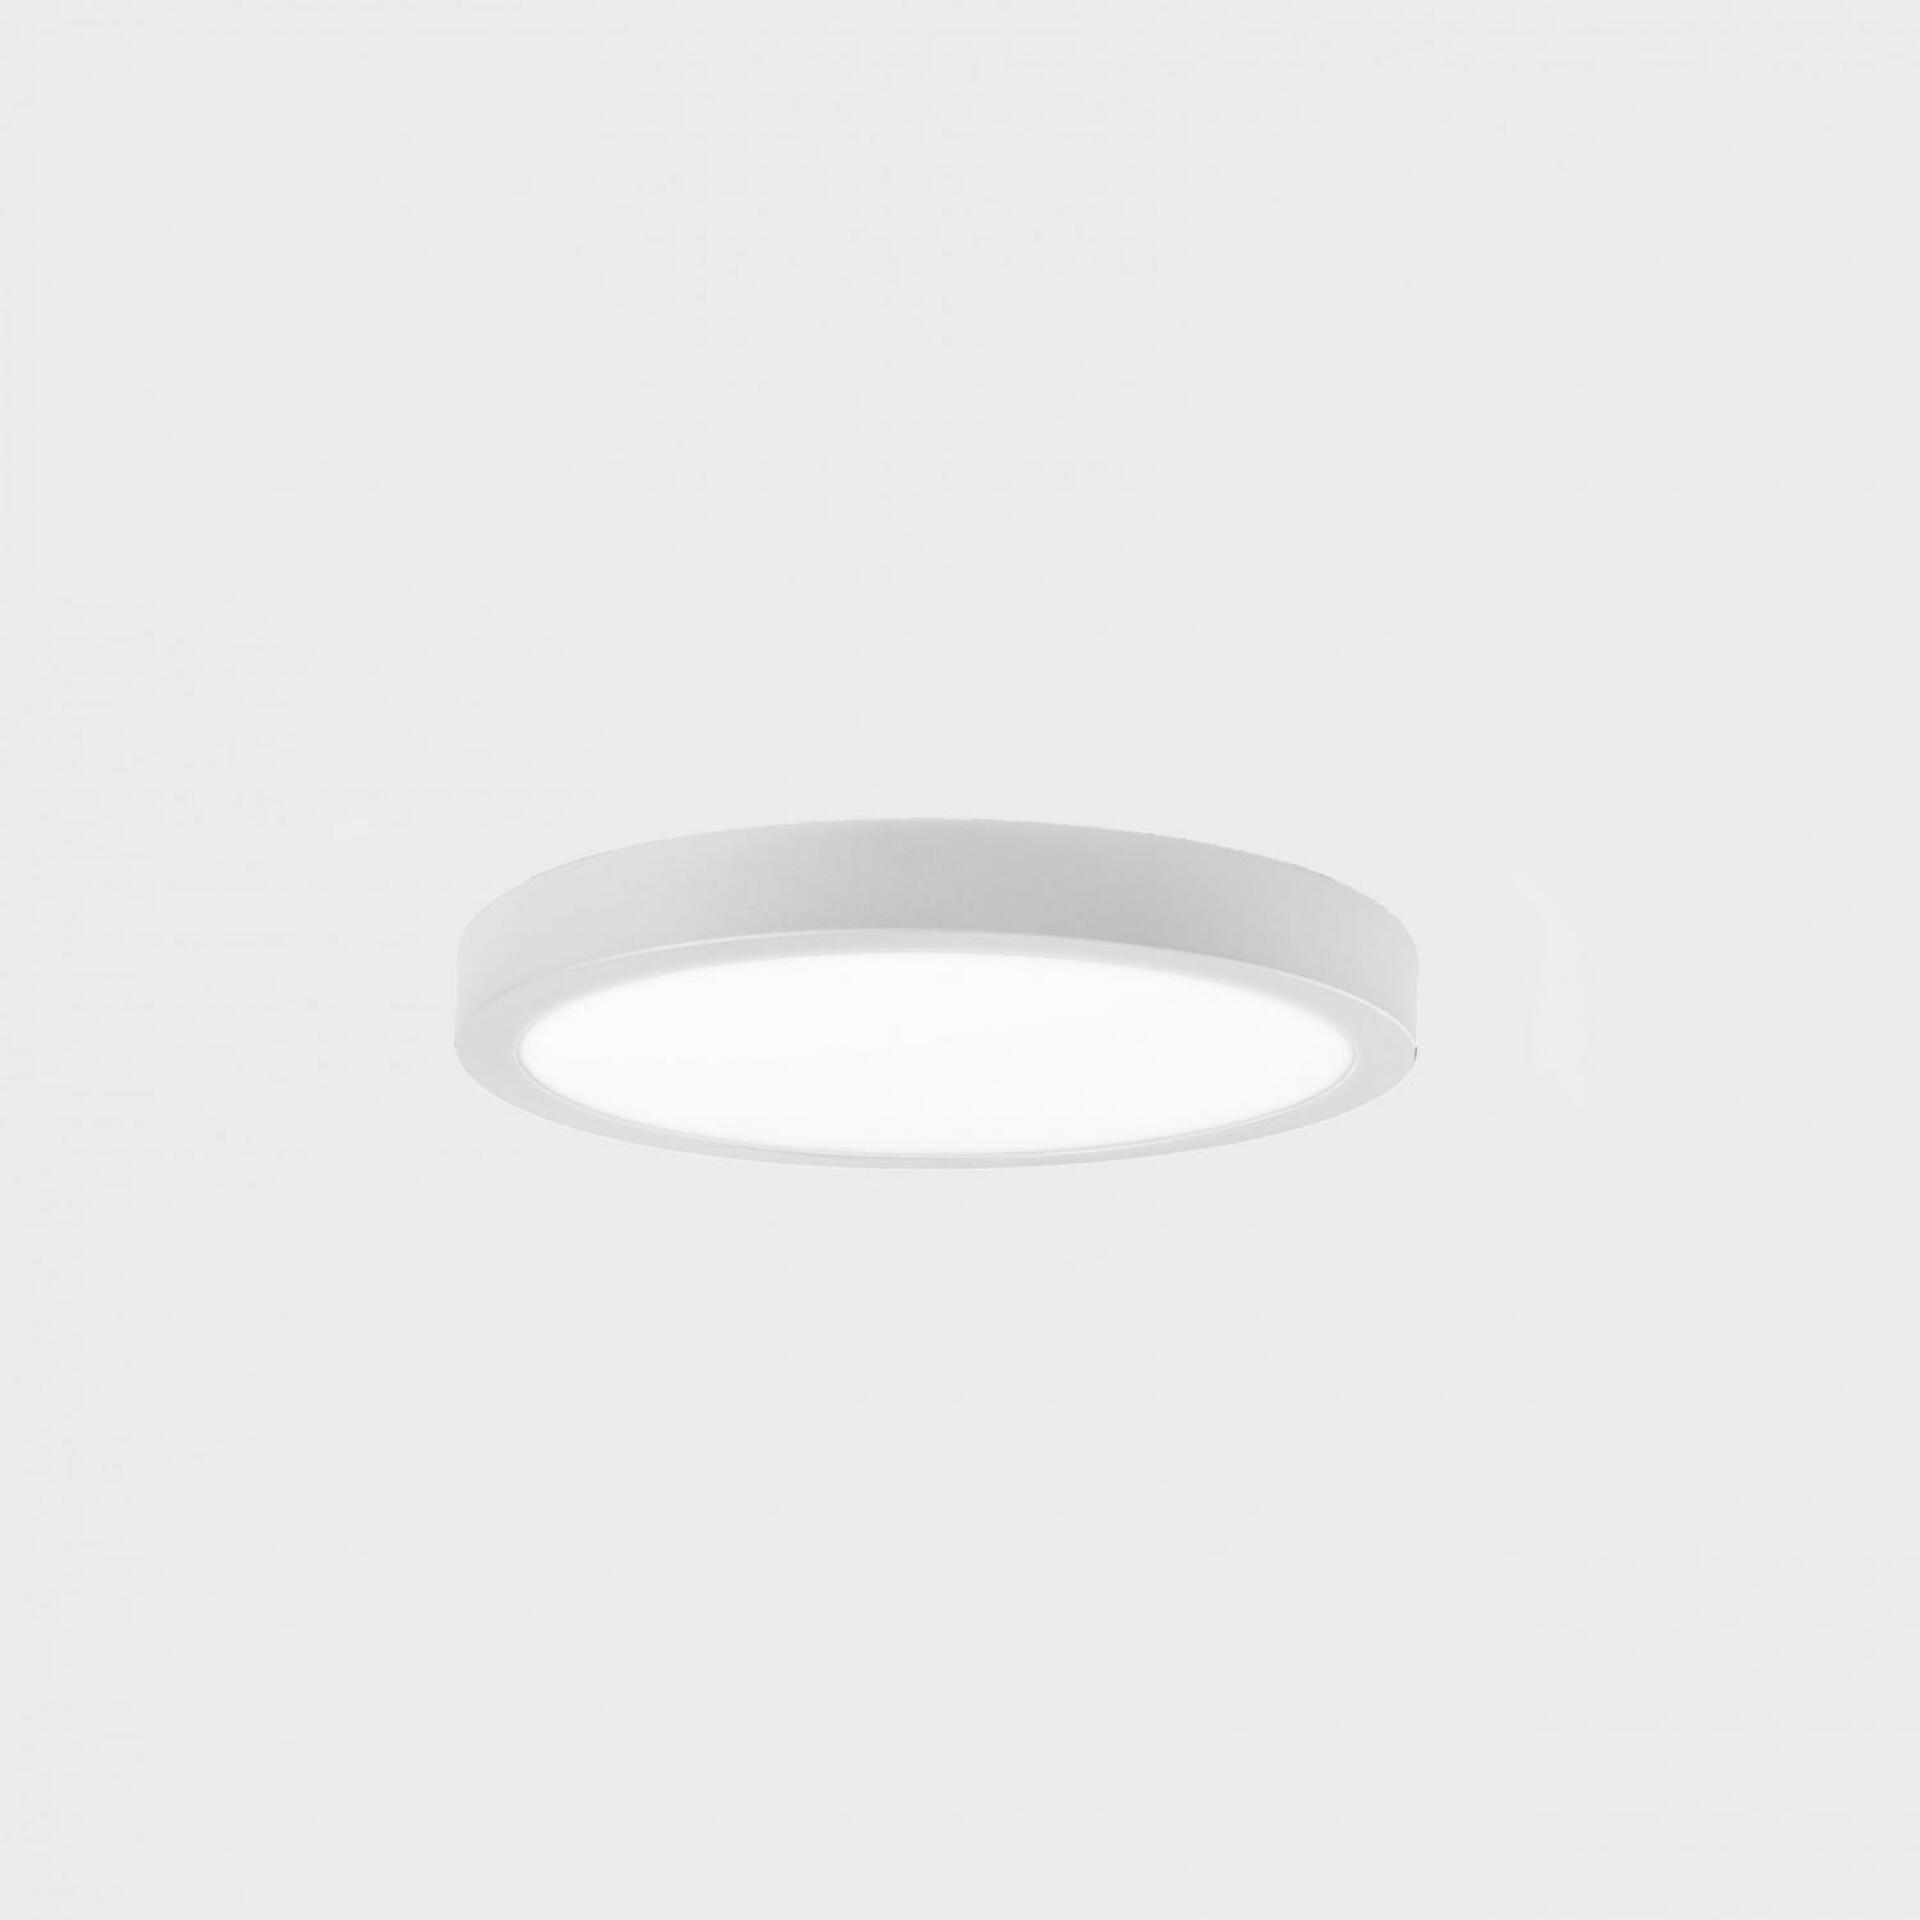 KOHL LIGHTING KOHL-Lighting DISC SLIM stropní svítidlo pr. 145 mm bílá 12 W CRI 80 4000K 1.10V